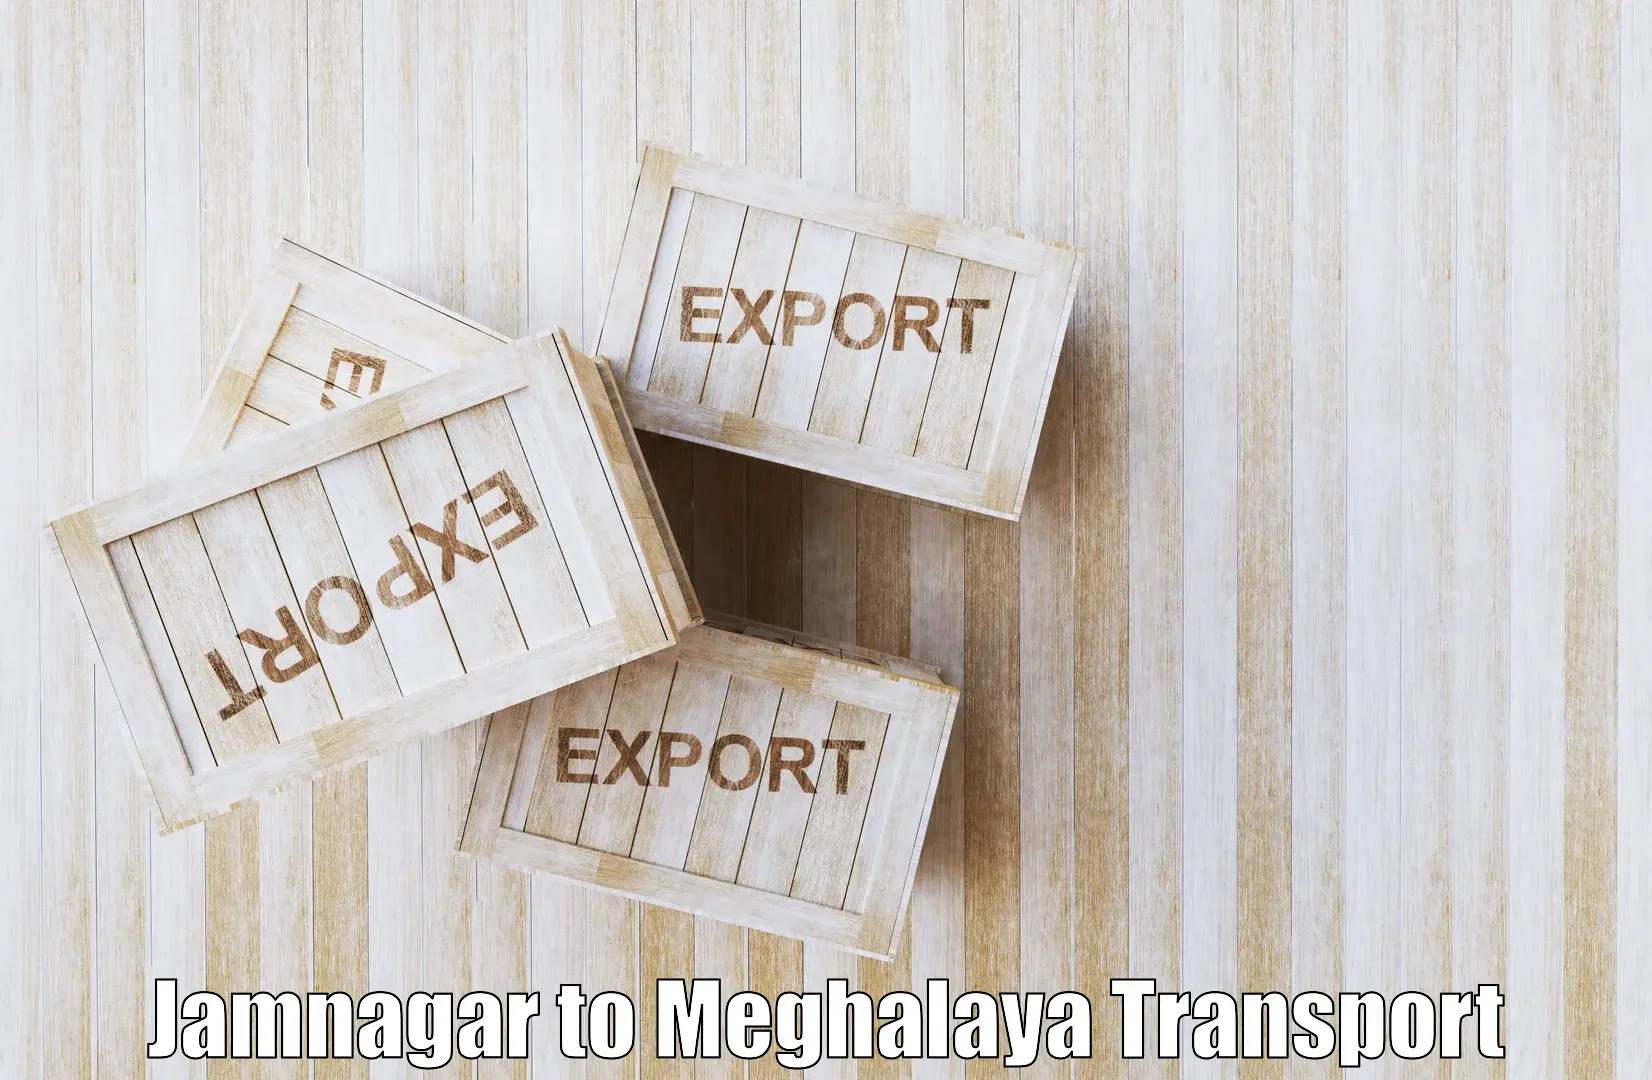 Land transport services Jamnagar to Jowai